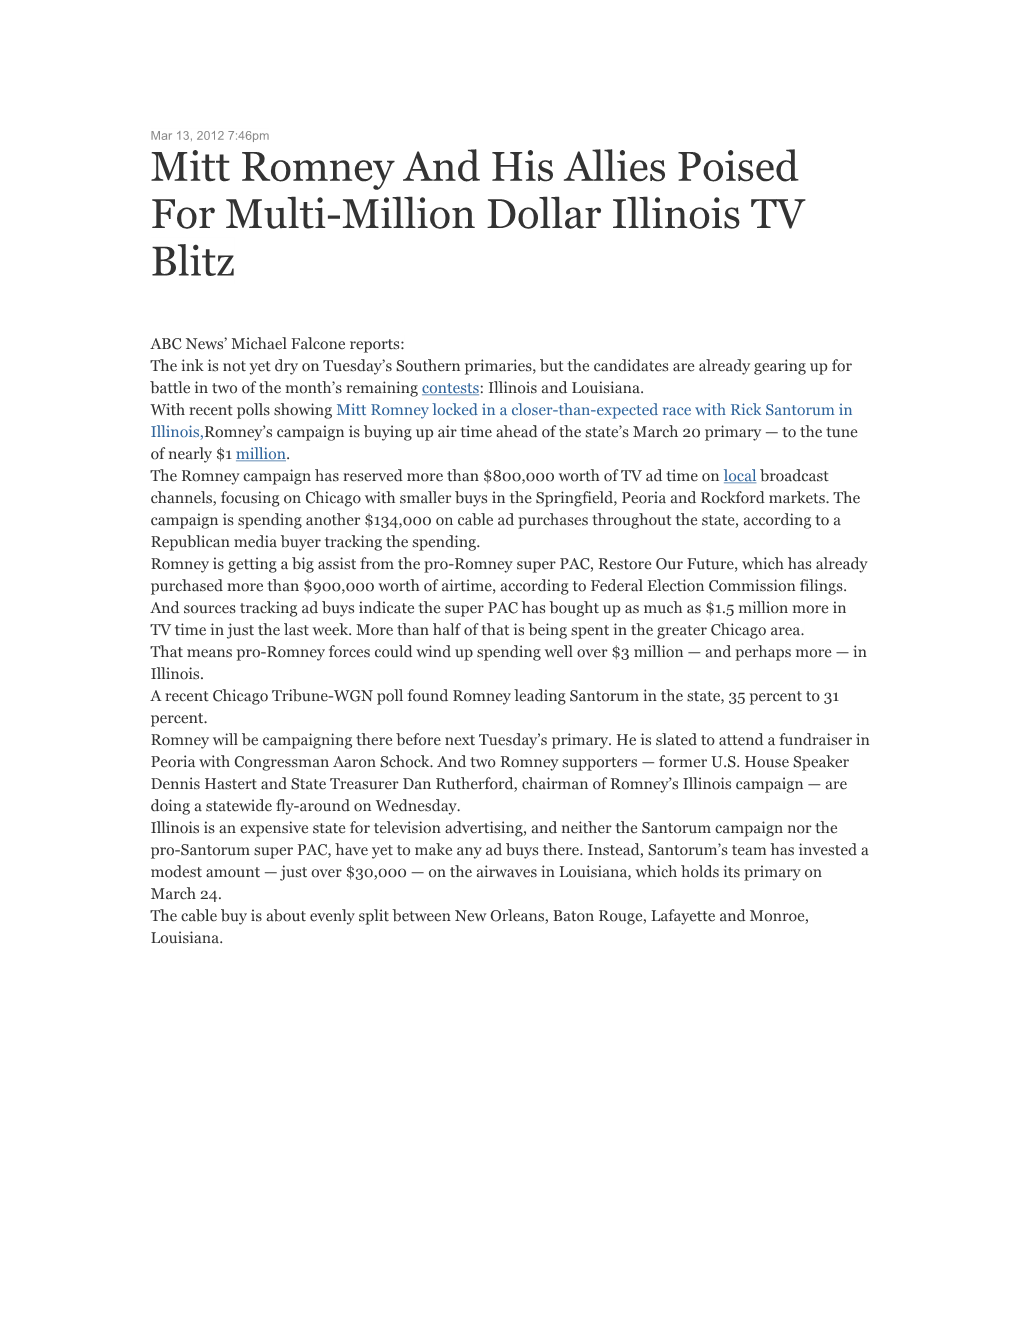 Mitt Romney and His Allies Poised for Multi-Million Dollar Illinois TV Blitz